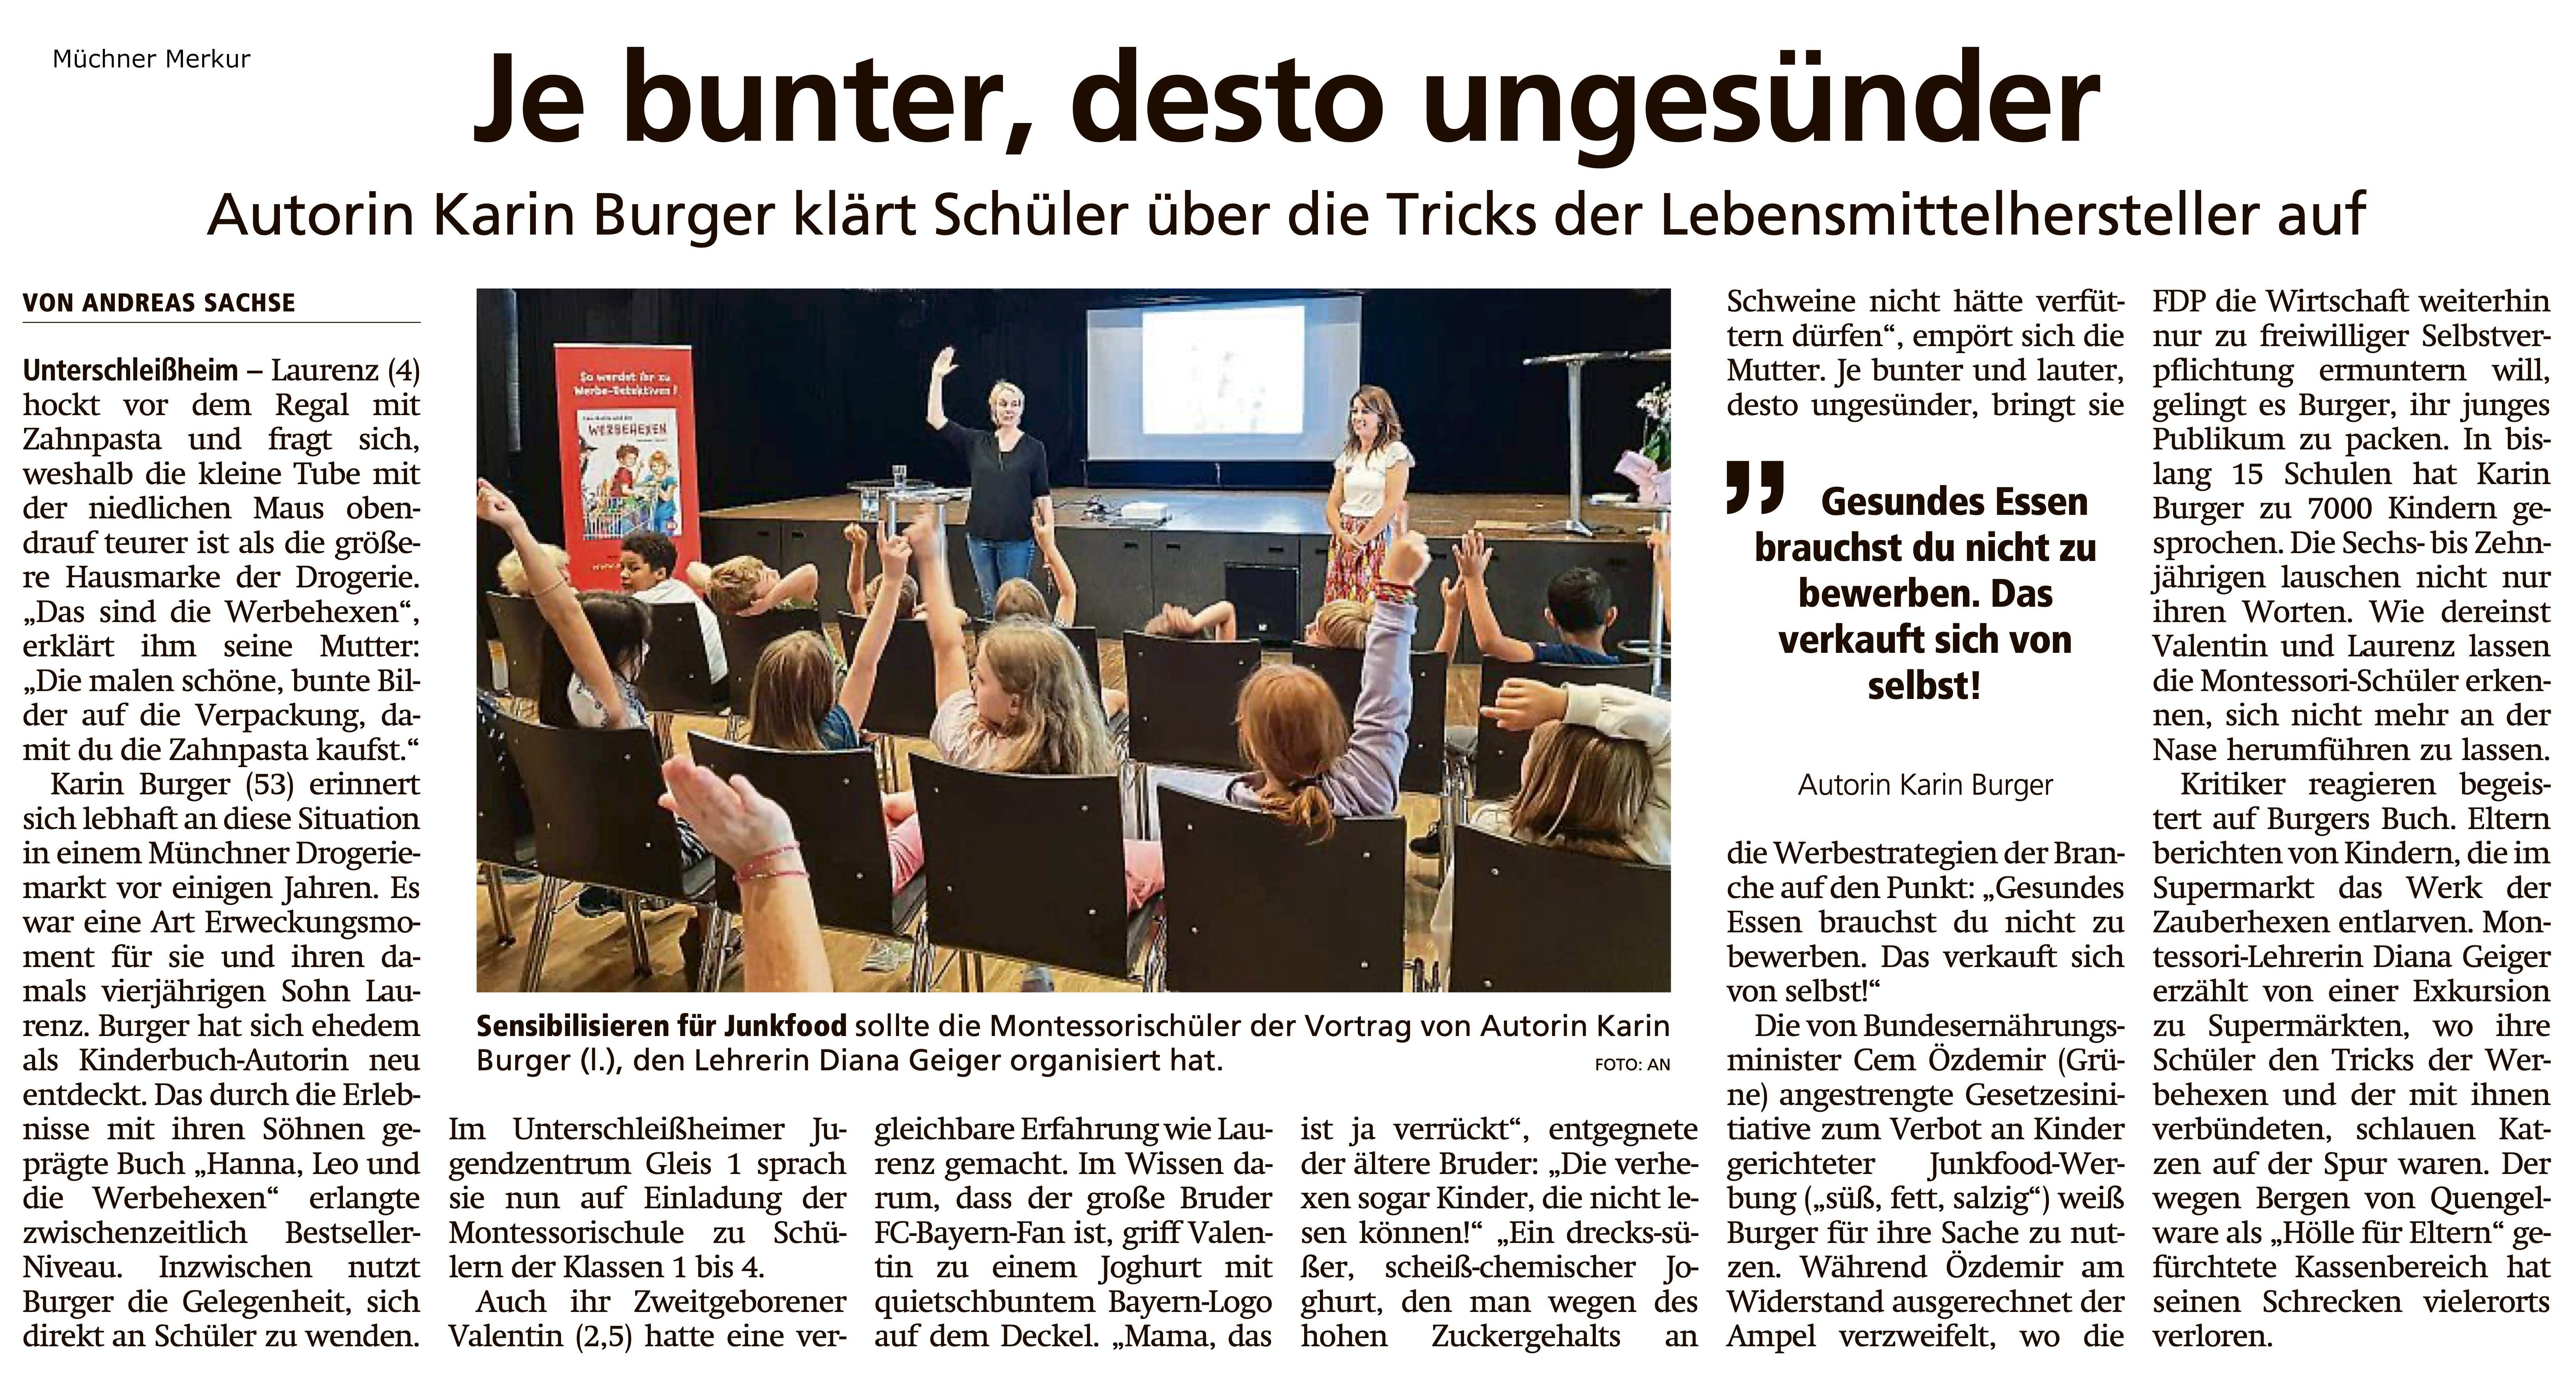 Zeitungsartikel des Münchner Merkur zum Thema "Je bunter, desto ungesünder"